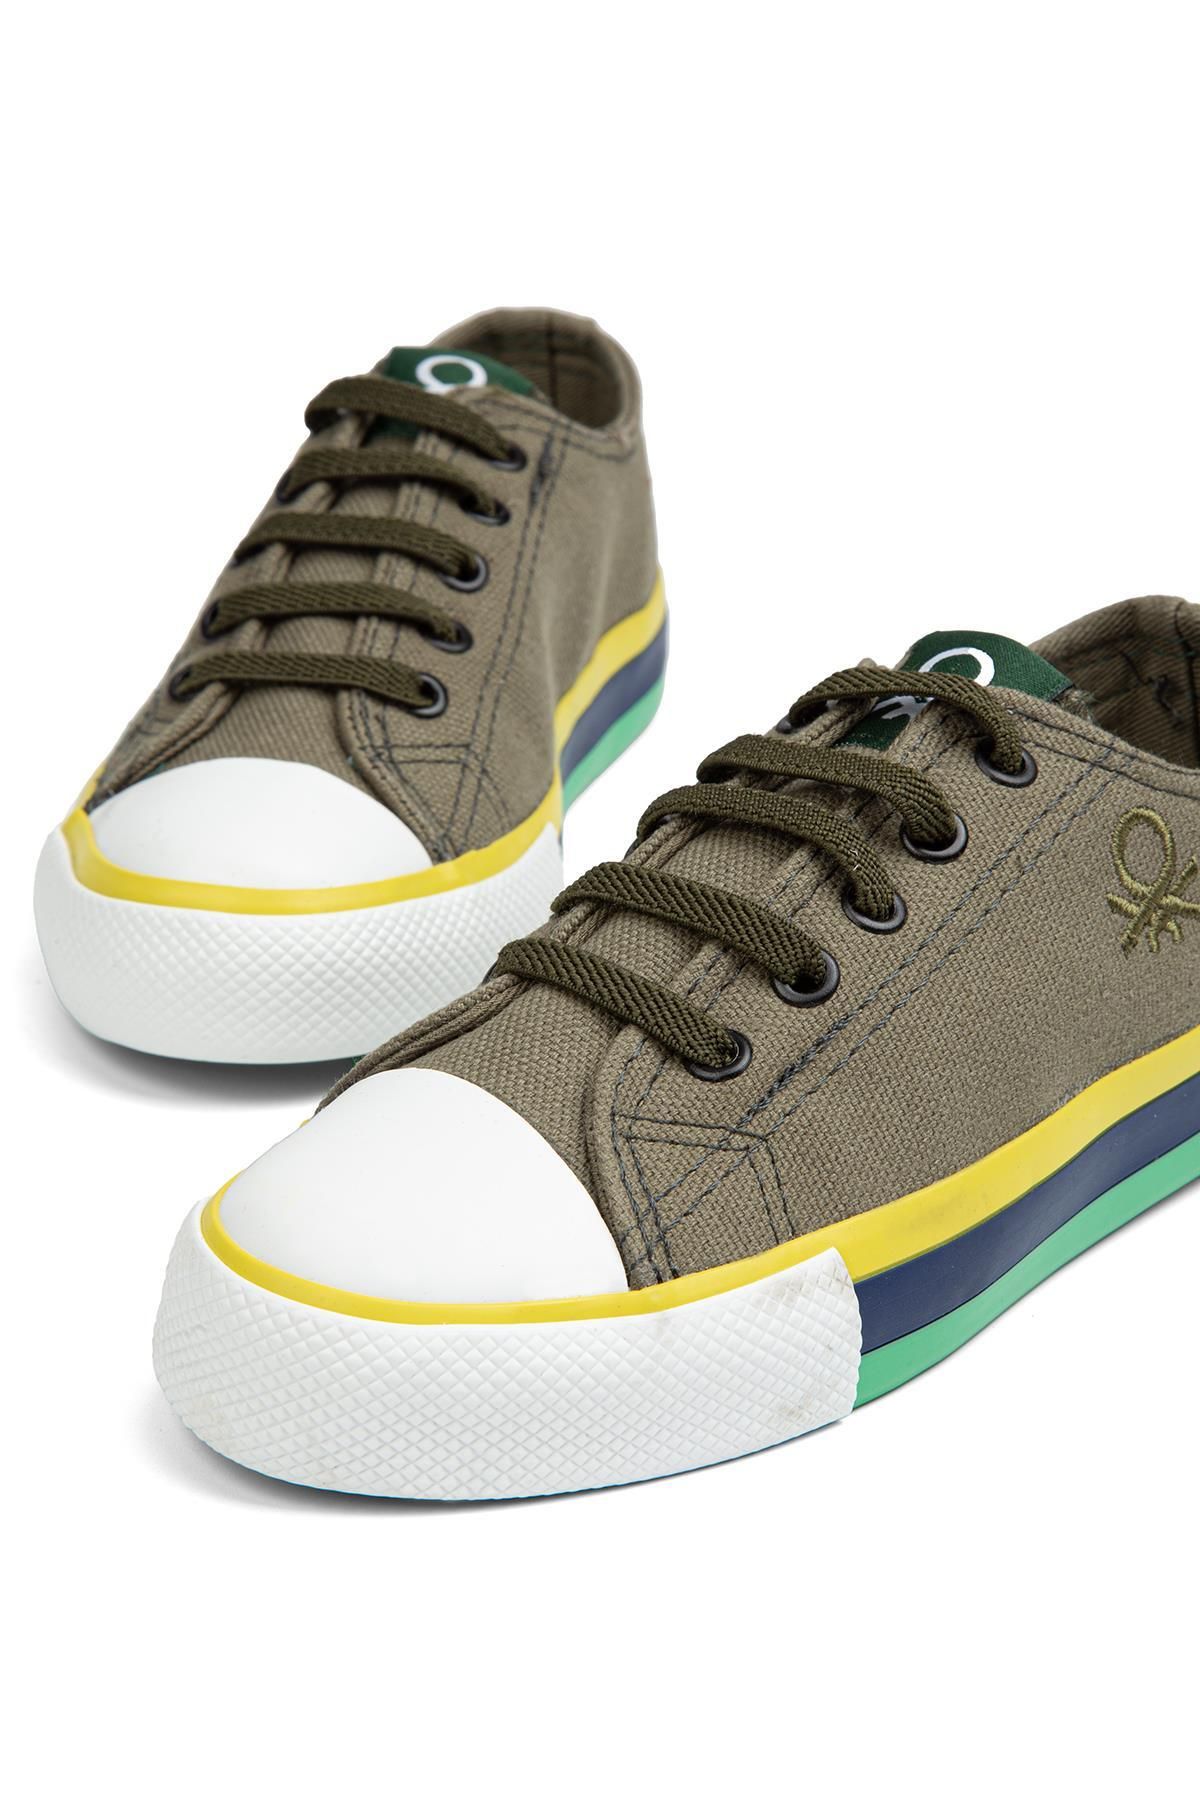 Benetton ® | BN-90175 - Haki - Çocuk Spor Ayakkabı